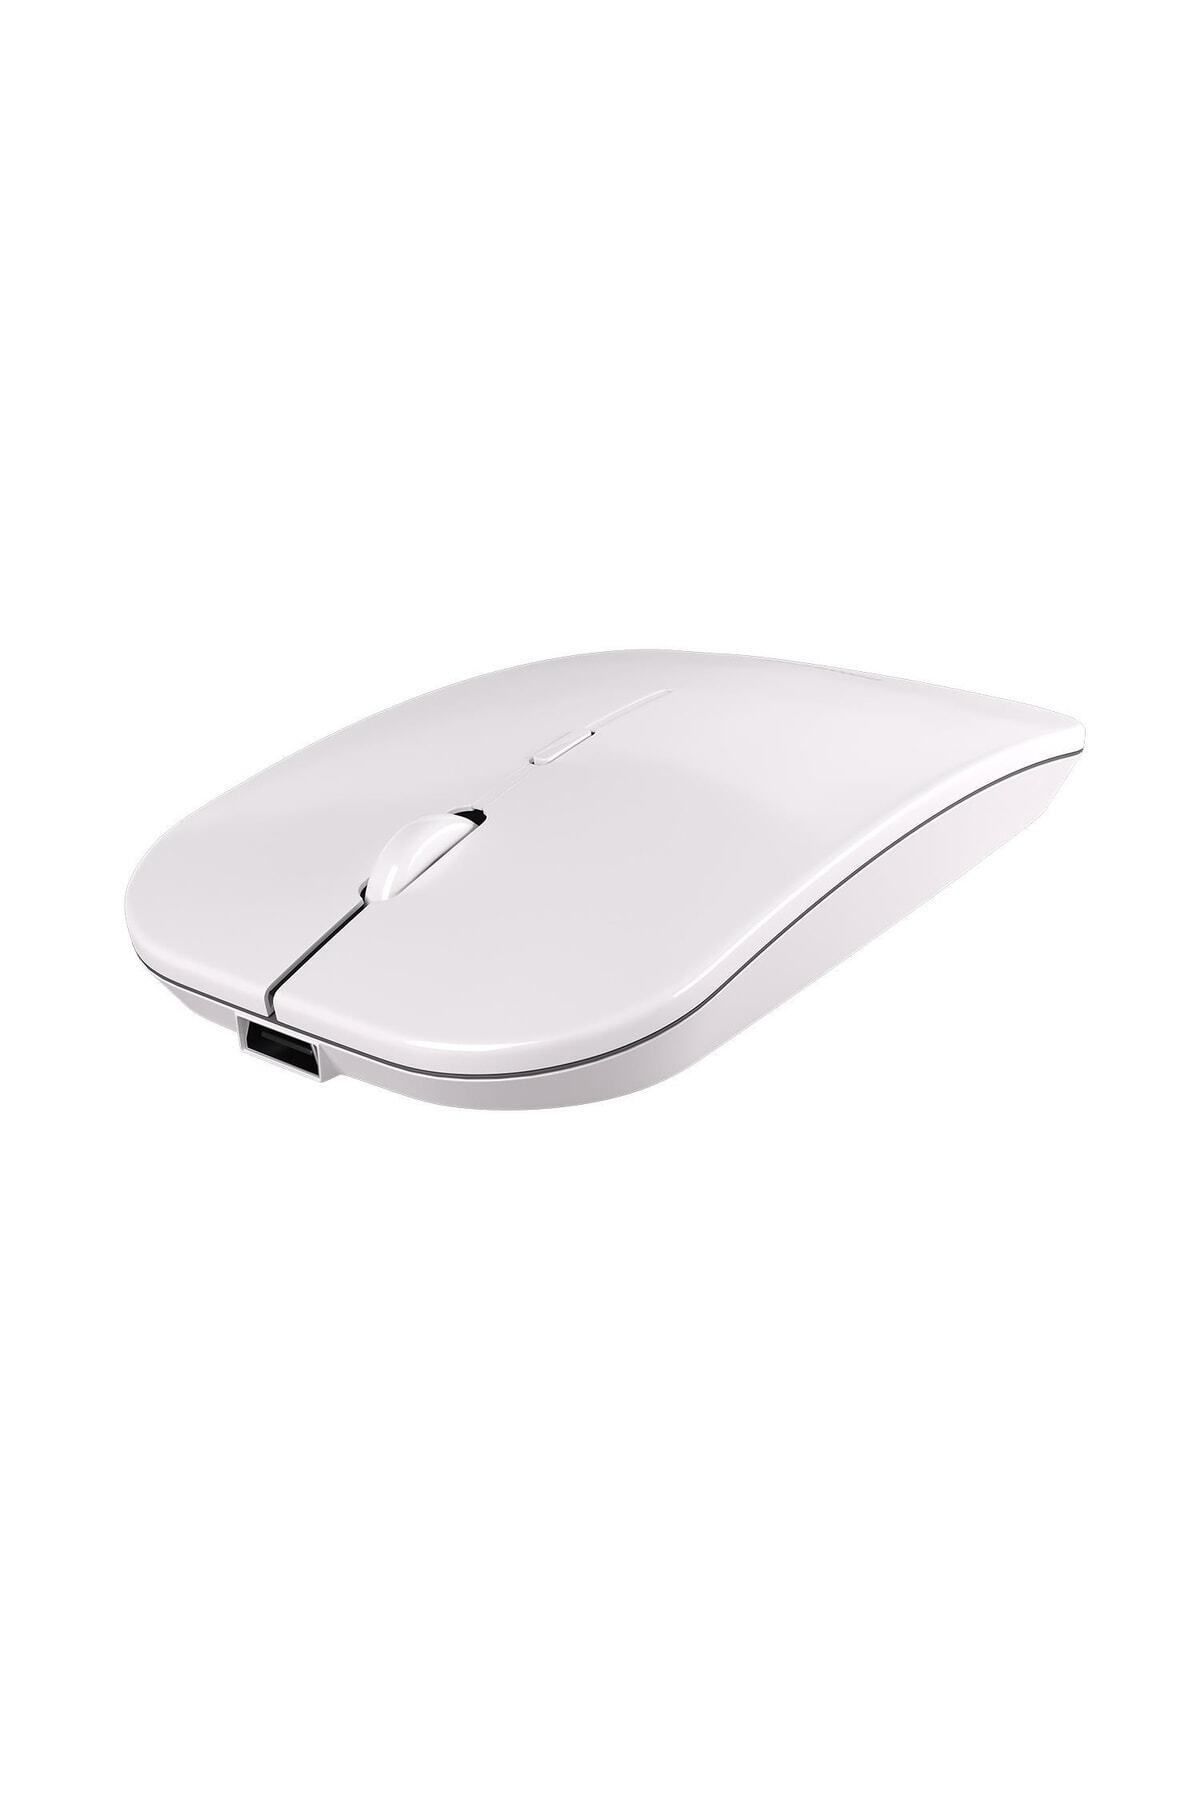 Leason Le101 Hibrit Bluetooth & Wireless Şarj Edilebilir Kablosuz Mouse - Beyaz